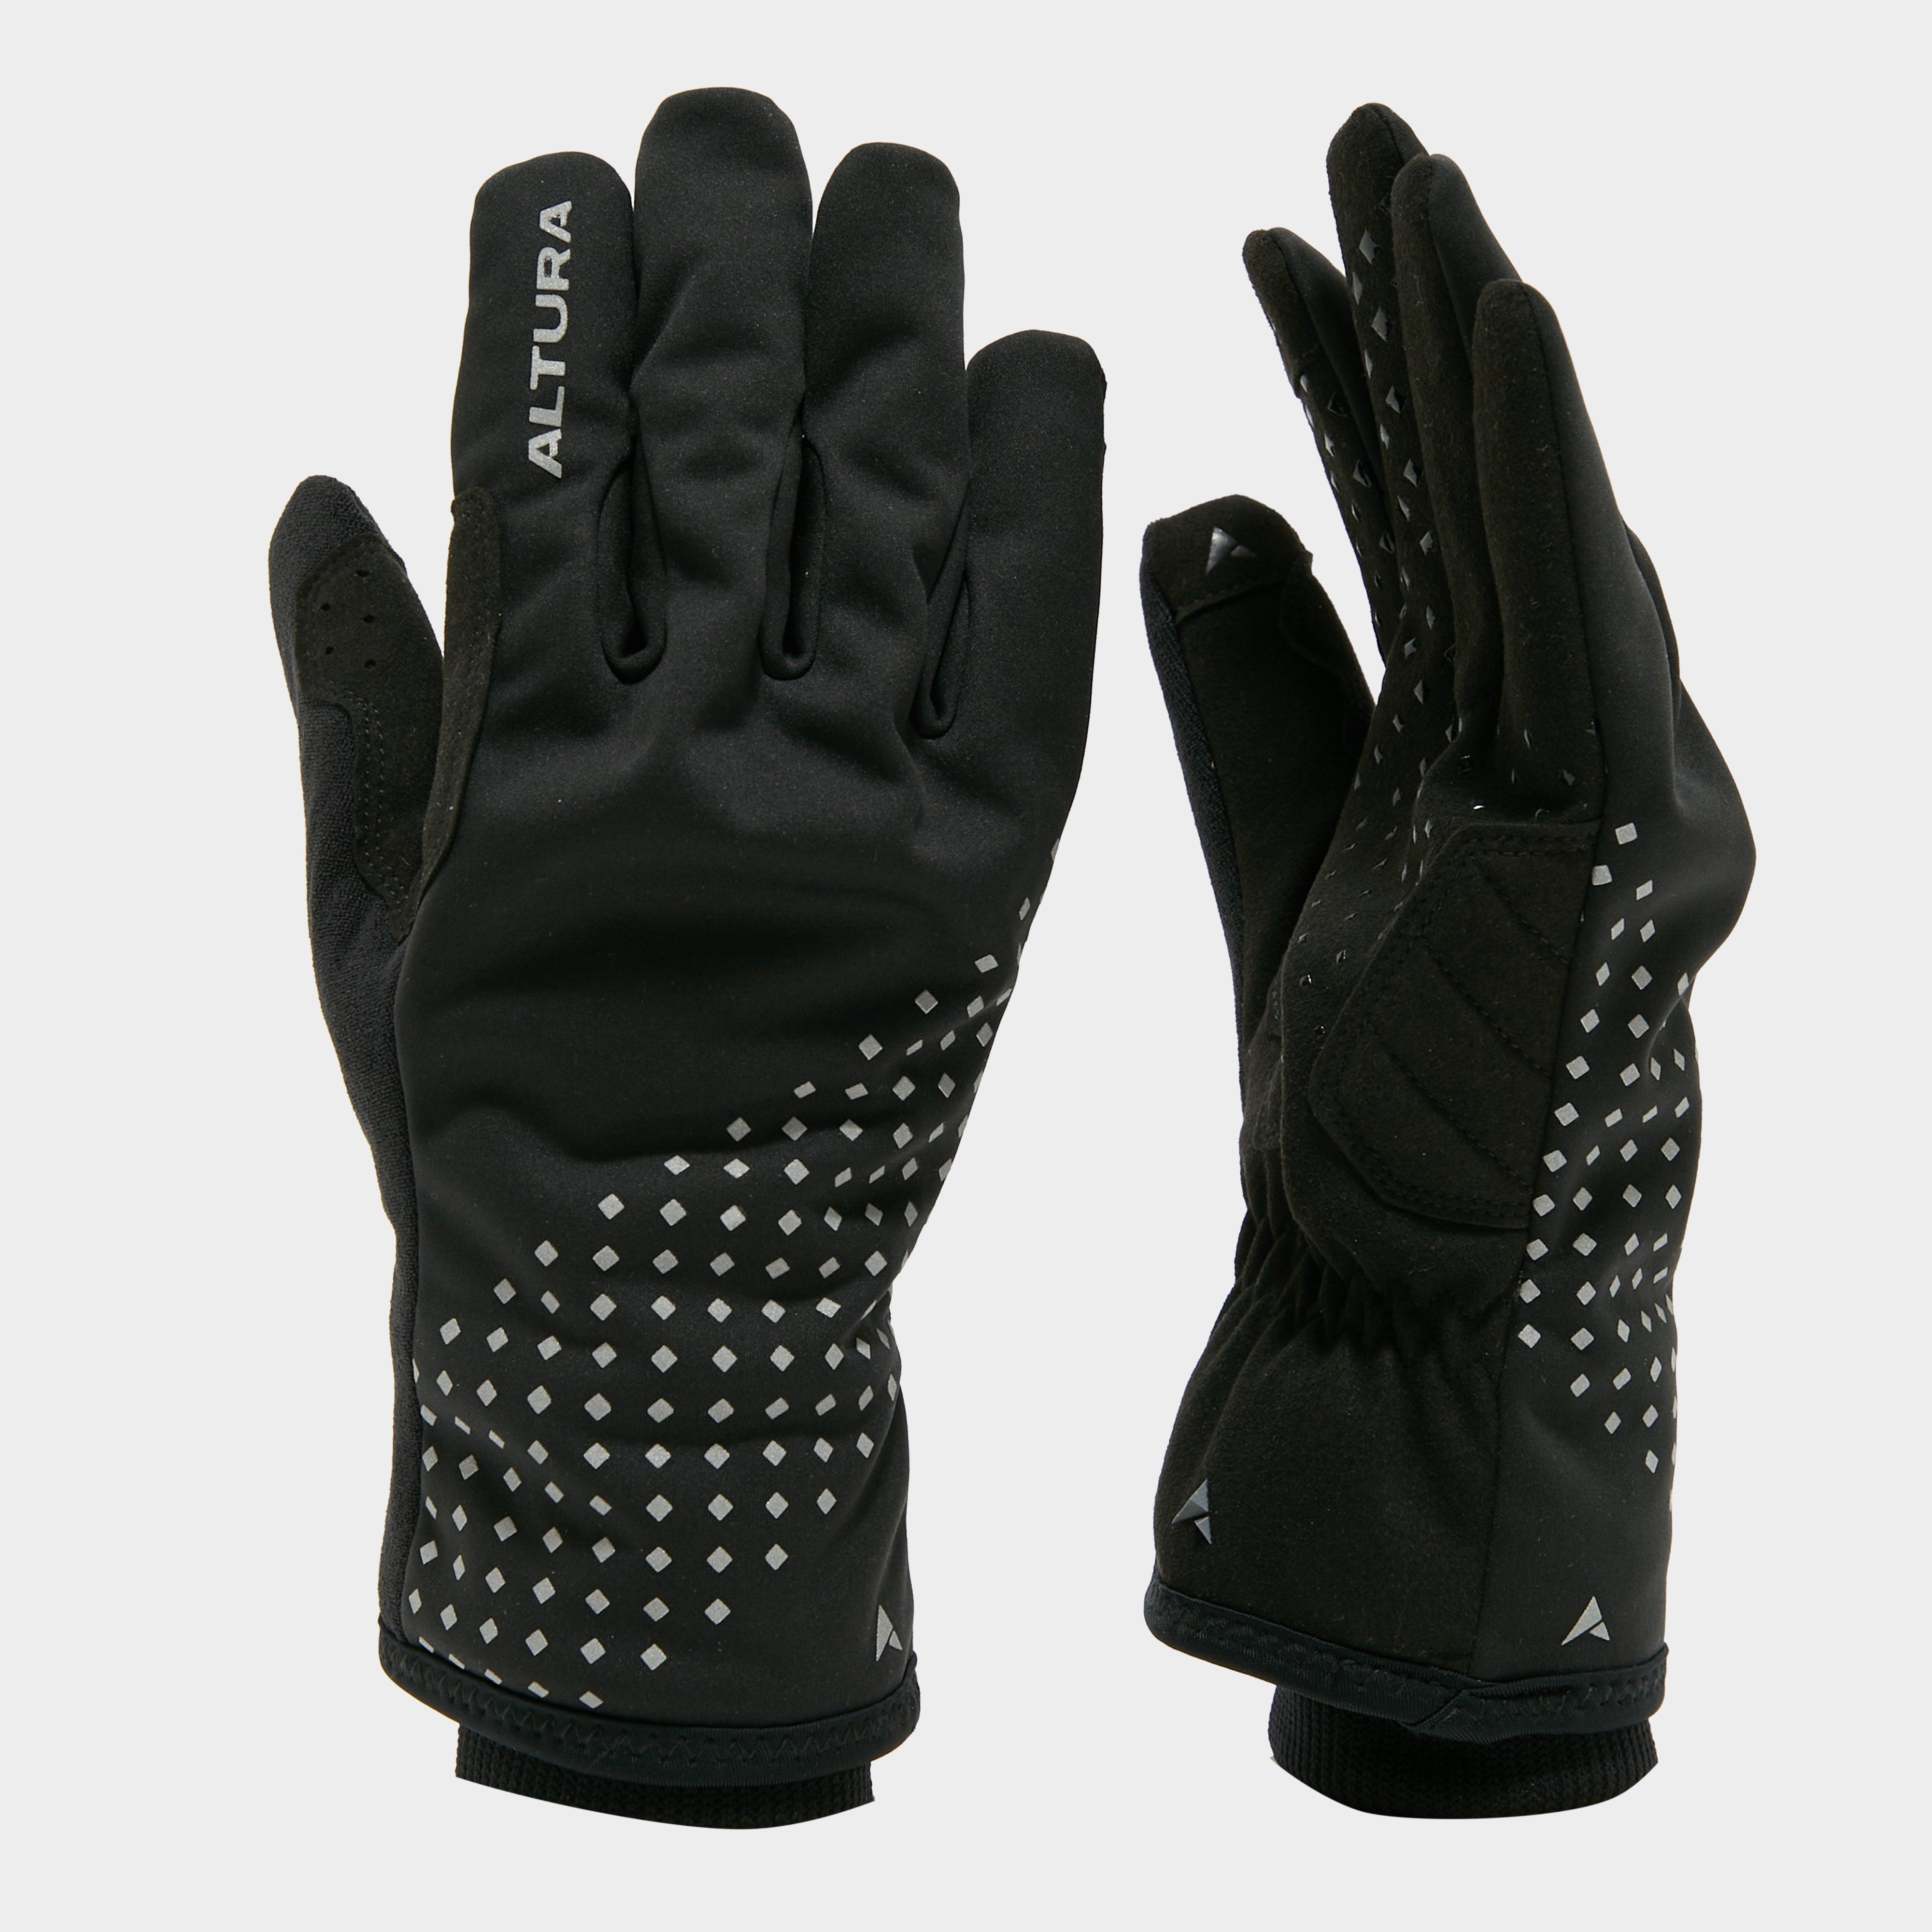 Altura Nightvision Waterproof Gloves - Black/black  Black/black